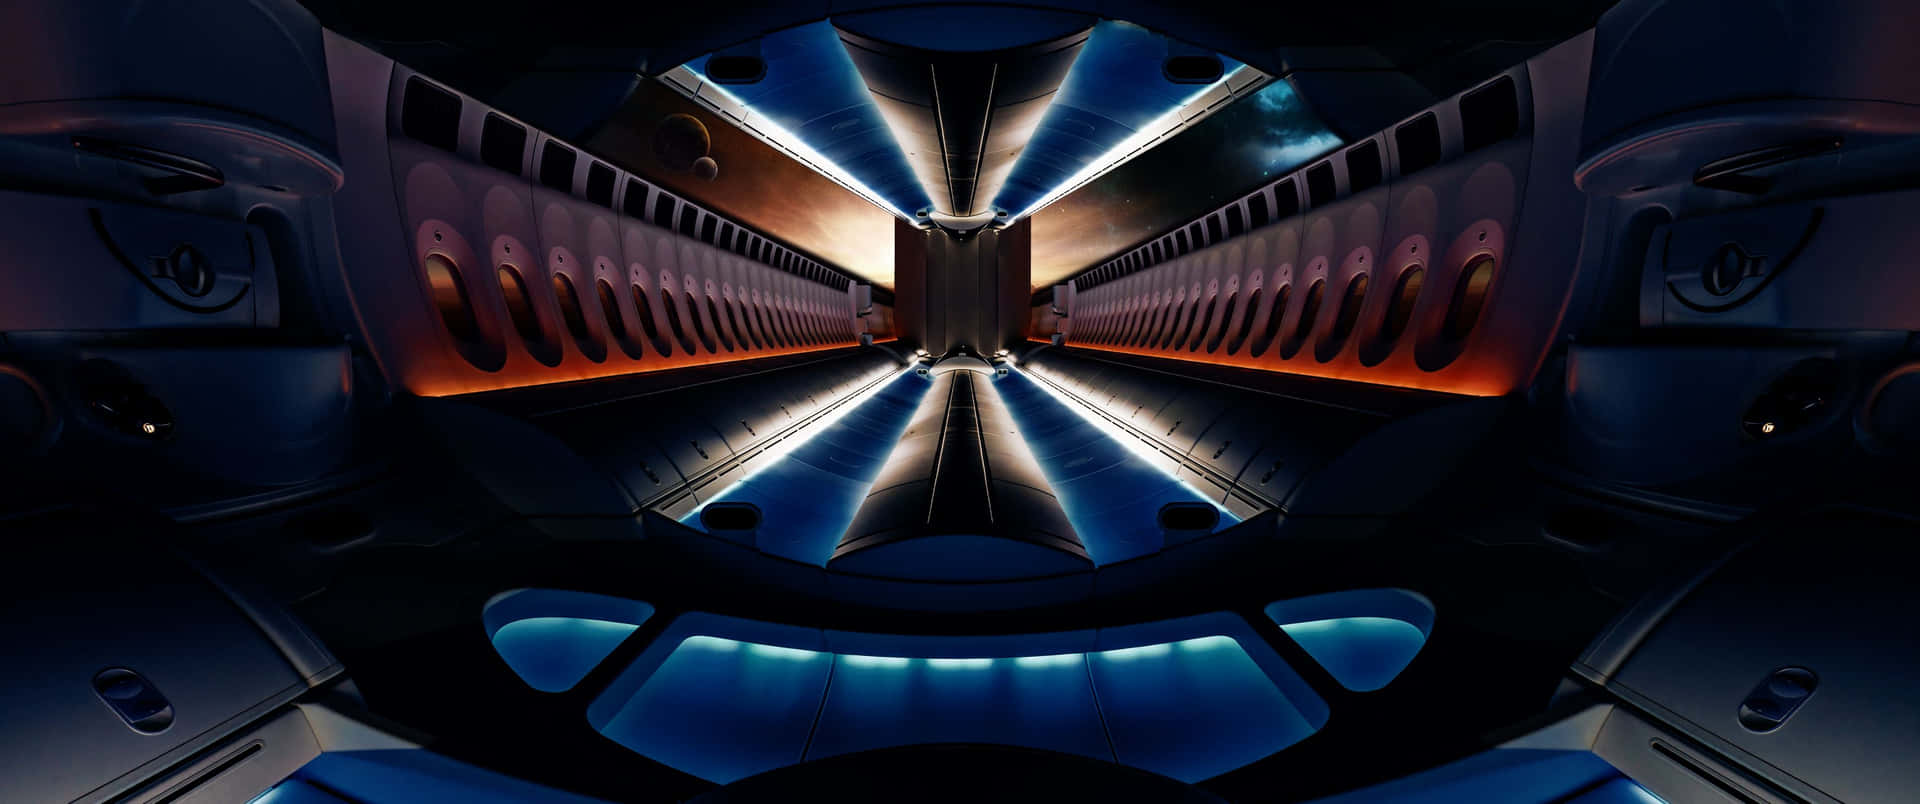 Recorridoespacial De 3440x1440 Por El Túnel Espacial Del Atomium En Bruselas Fondo de pantalla